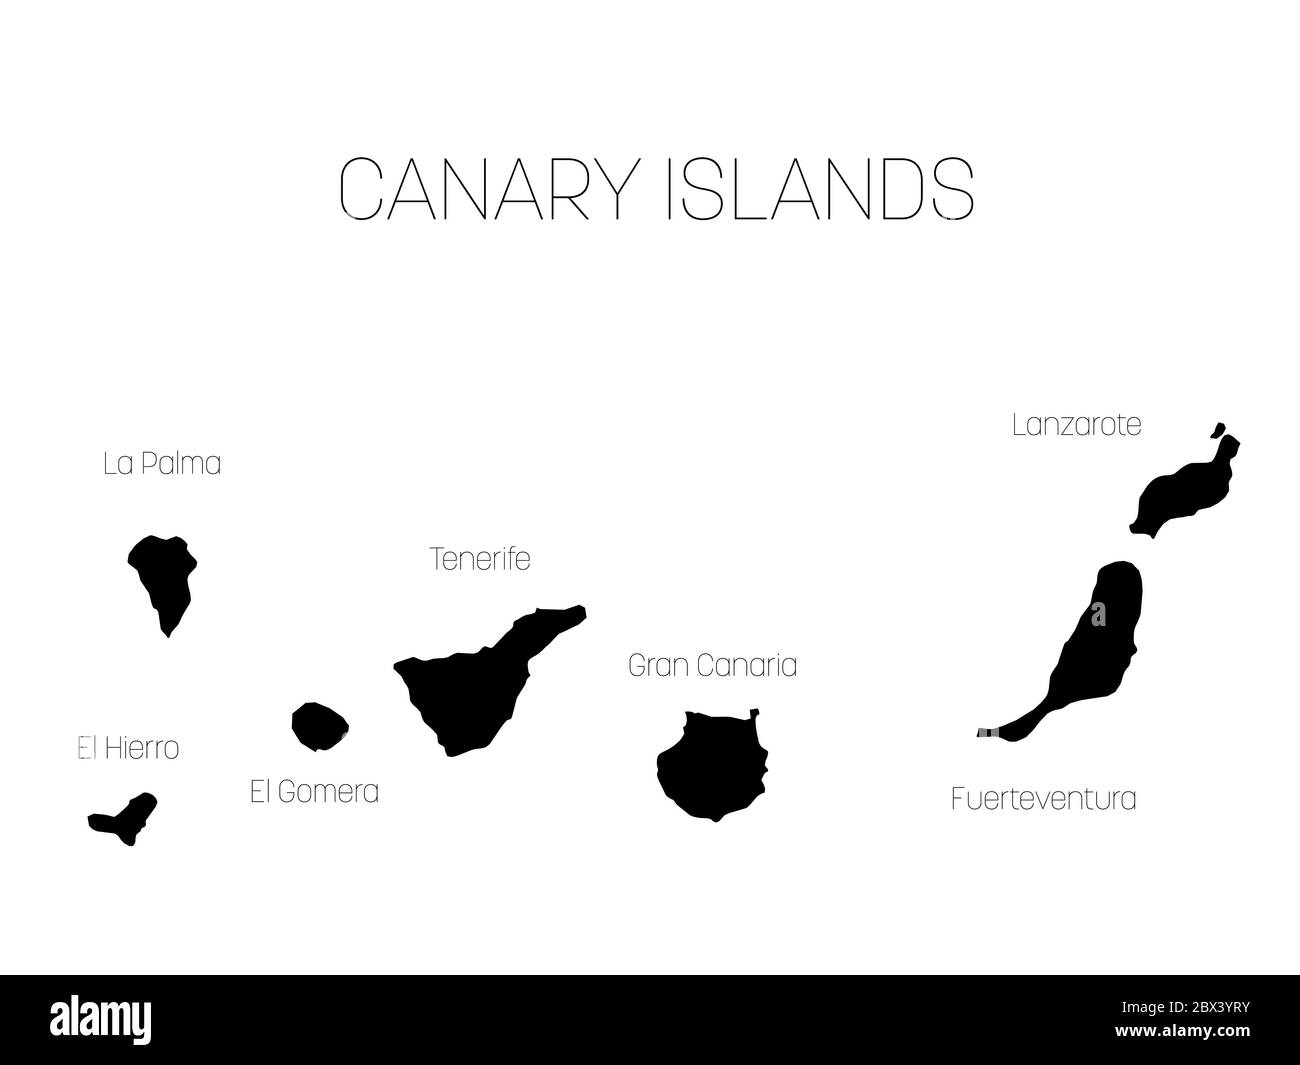 Karte der Kanarischen Inseln, Spanien, mit Etiketten von jeder Insel - El Hierro, La Palma, La Gomera, Teneriffa, Gran Canaria, Fuerteventura und Lanzarote. Schwarze Vektor Silhouette auf weißem Hintergrund. Stock Vektor